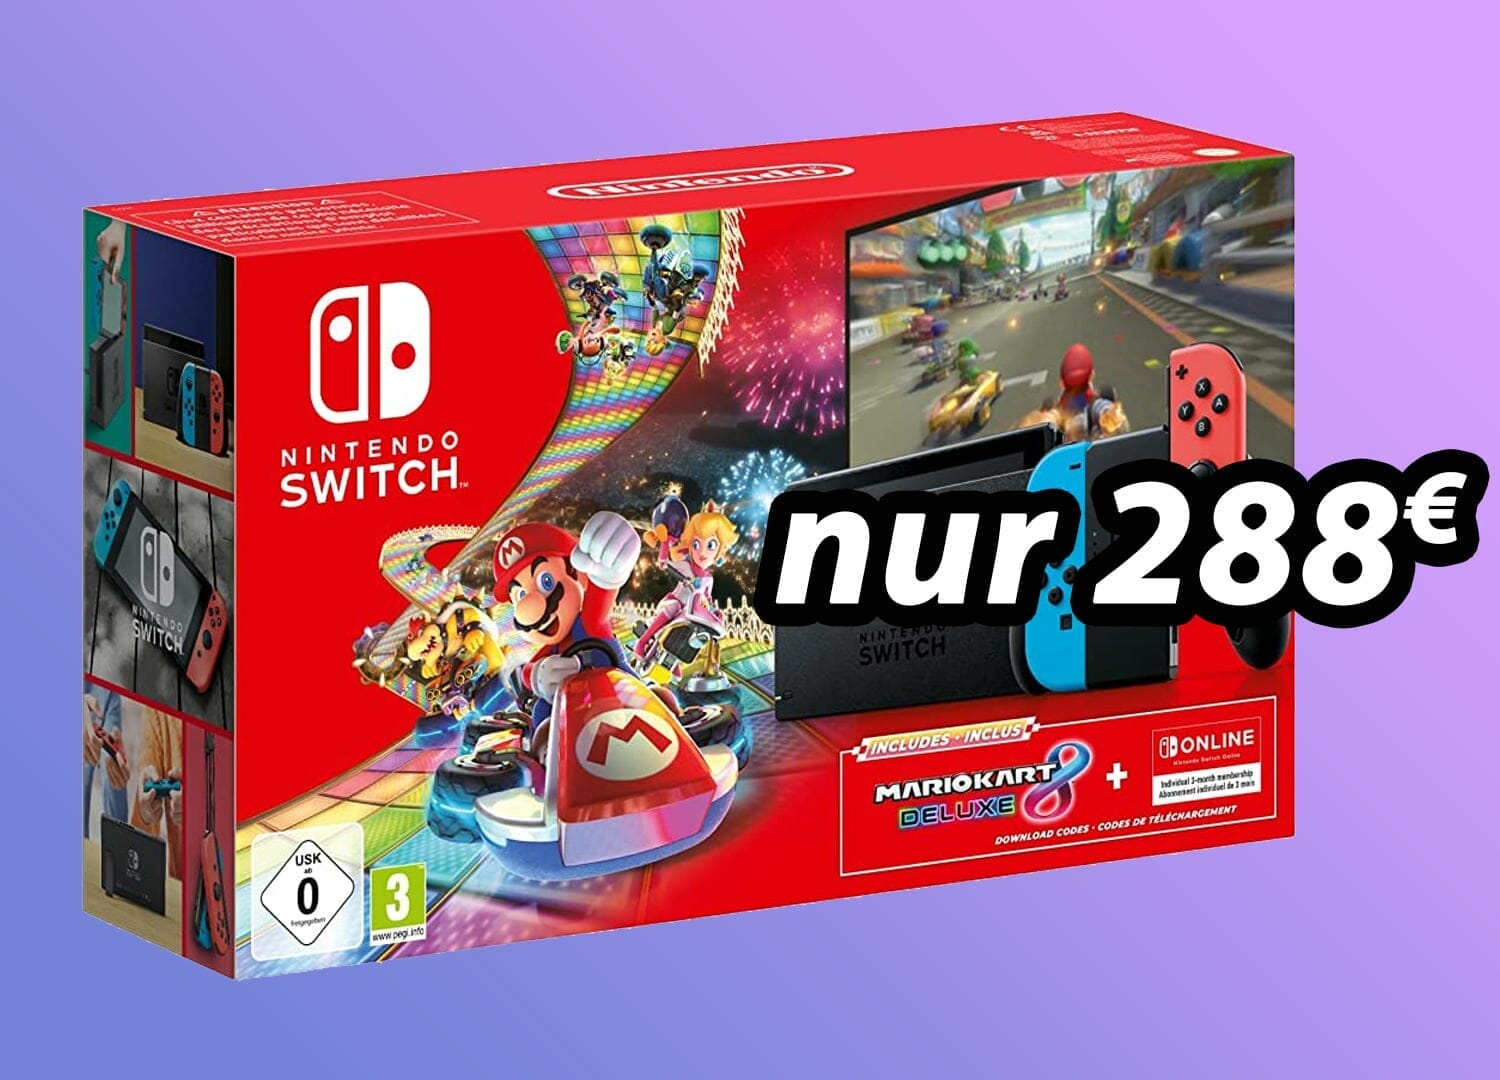 Nintendo lockt mit günstigem Switch-Bundle inkl. Mario Kart 8 für 288 Euro!  - 4K Filme